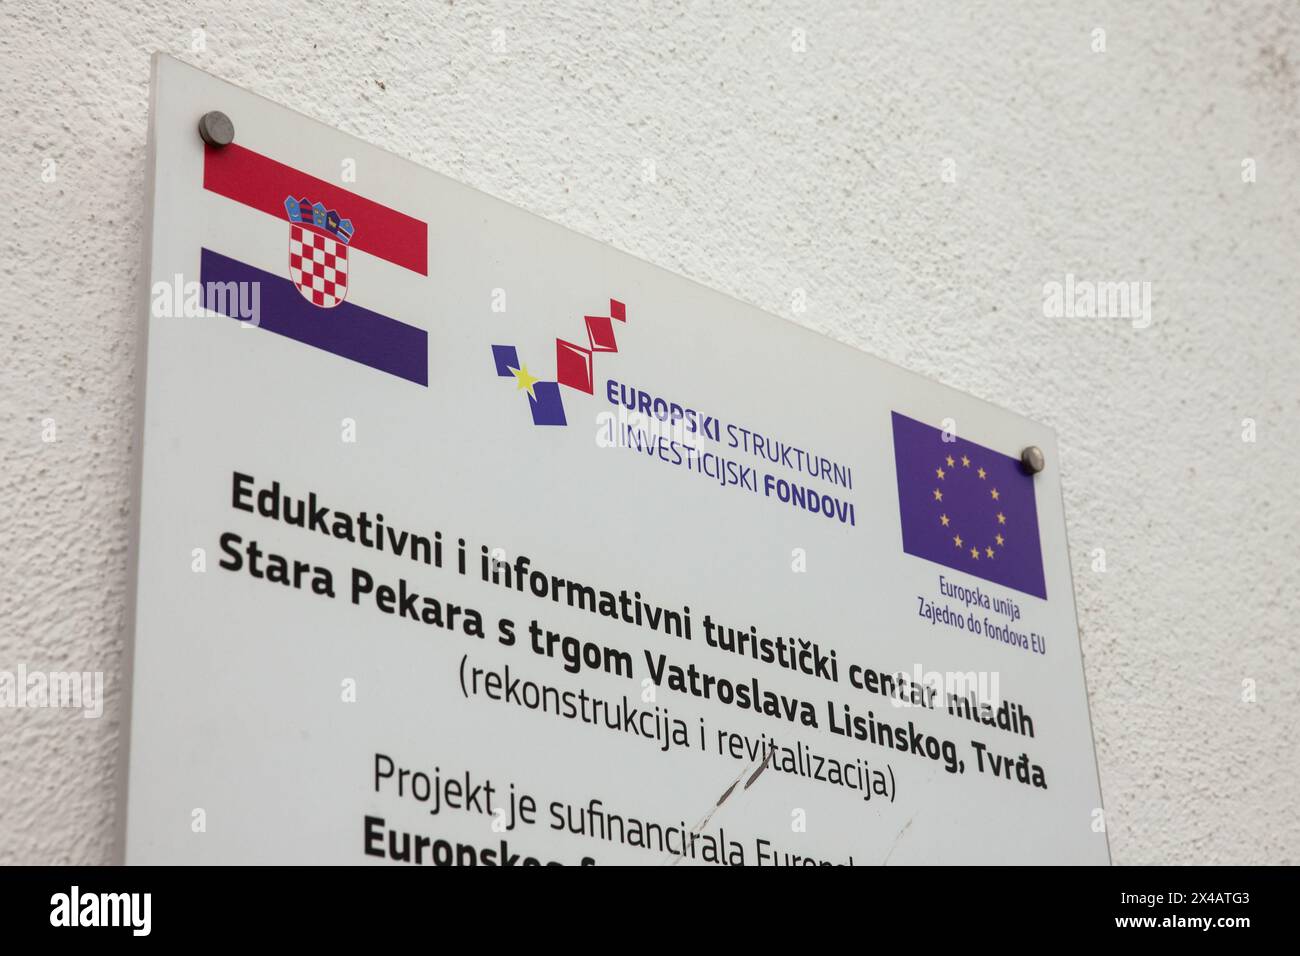 Bild eines Schildes, das anzeigt, dass ein Wiederaufbauprojekt von der kroatischen Regierung und der Europäischen Union in Kroatien, osijek, über den Europ finanziert wird Stockfoto